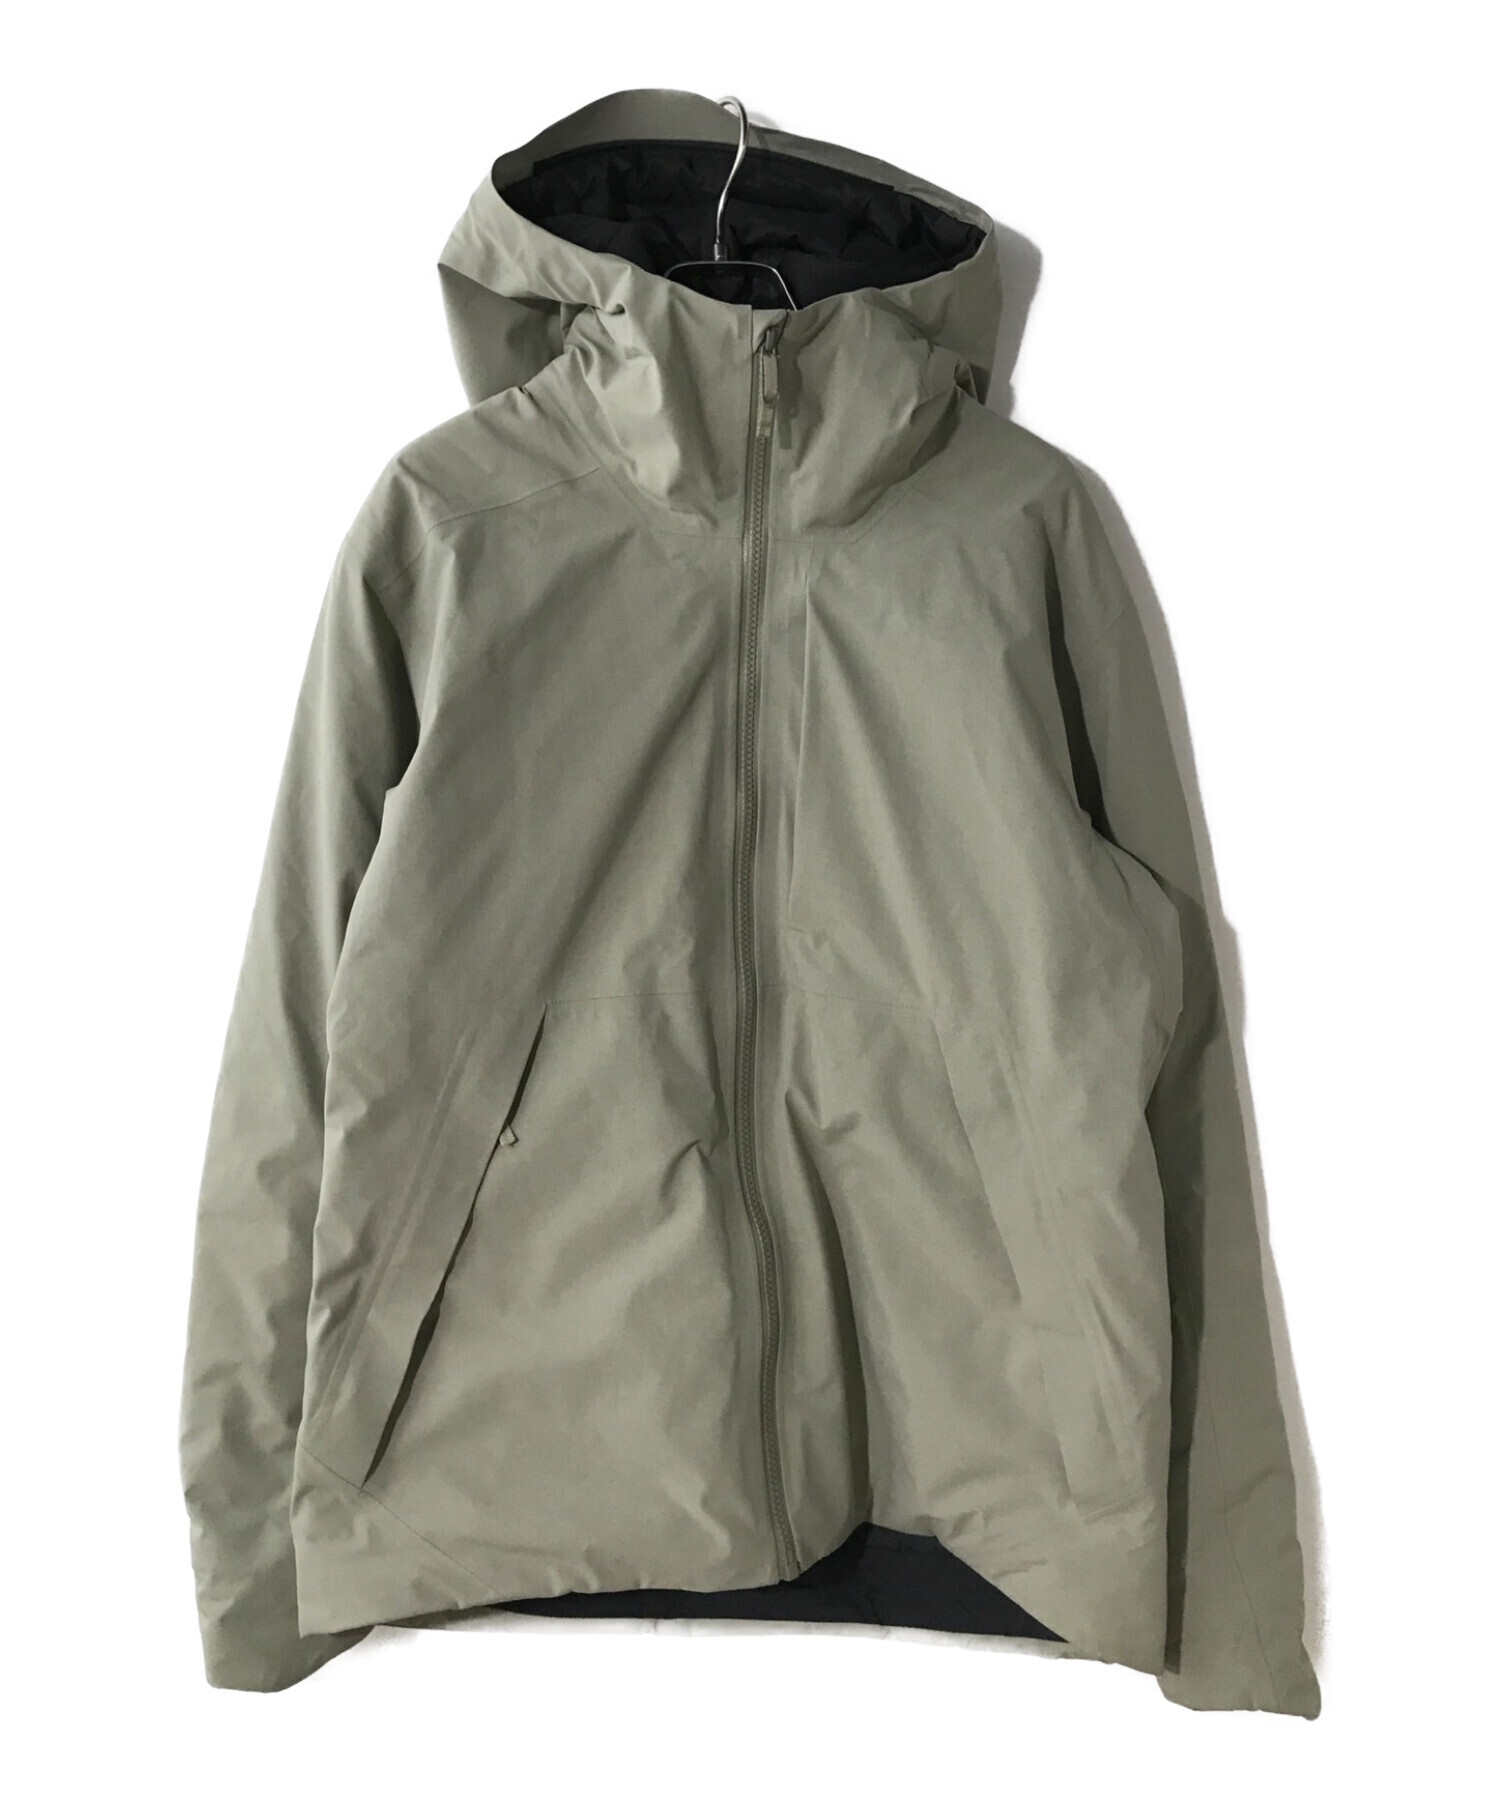 34,800円Arc’teryx Radsten Insulated Jacket